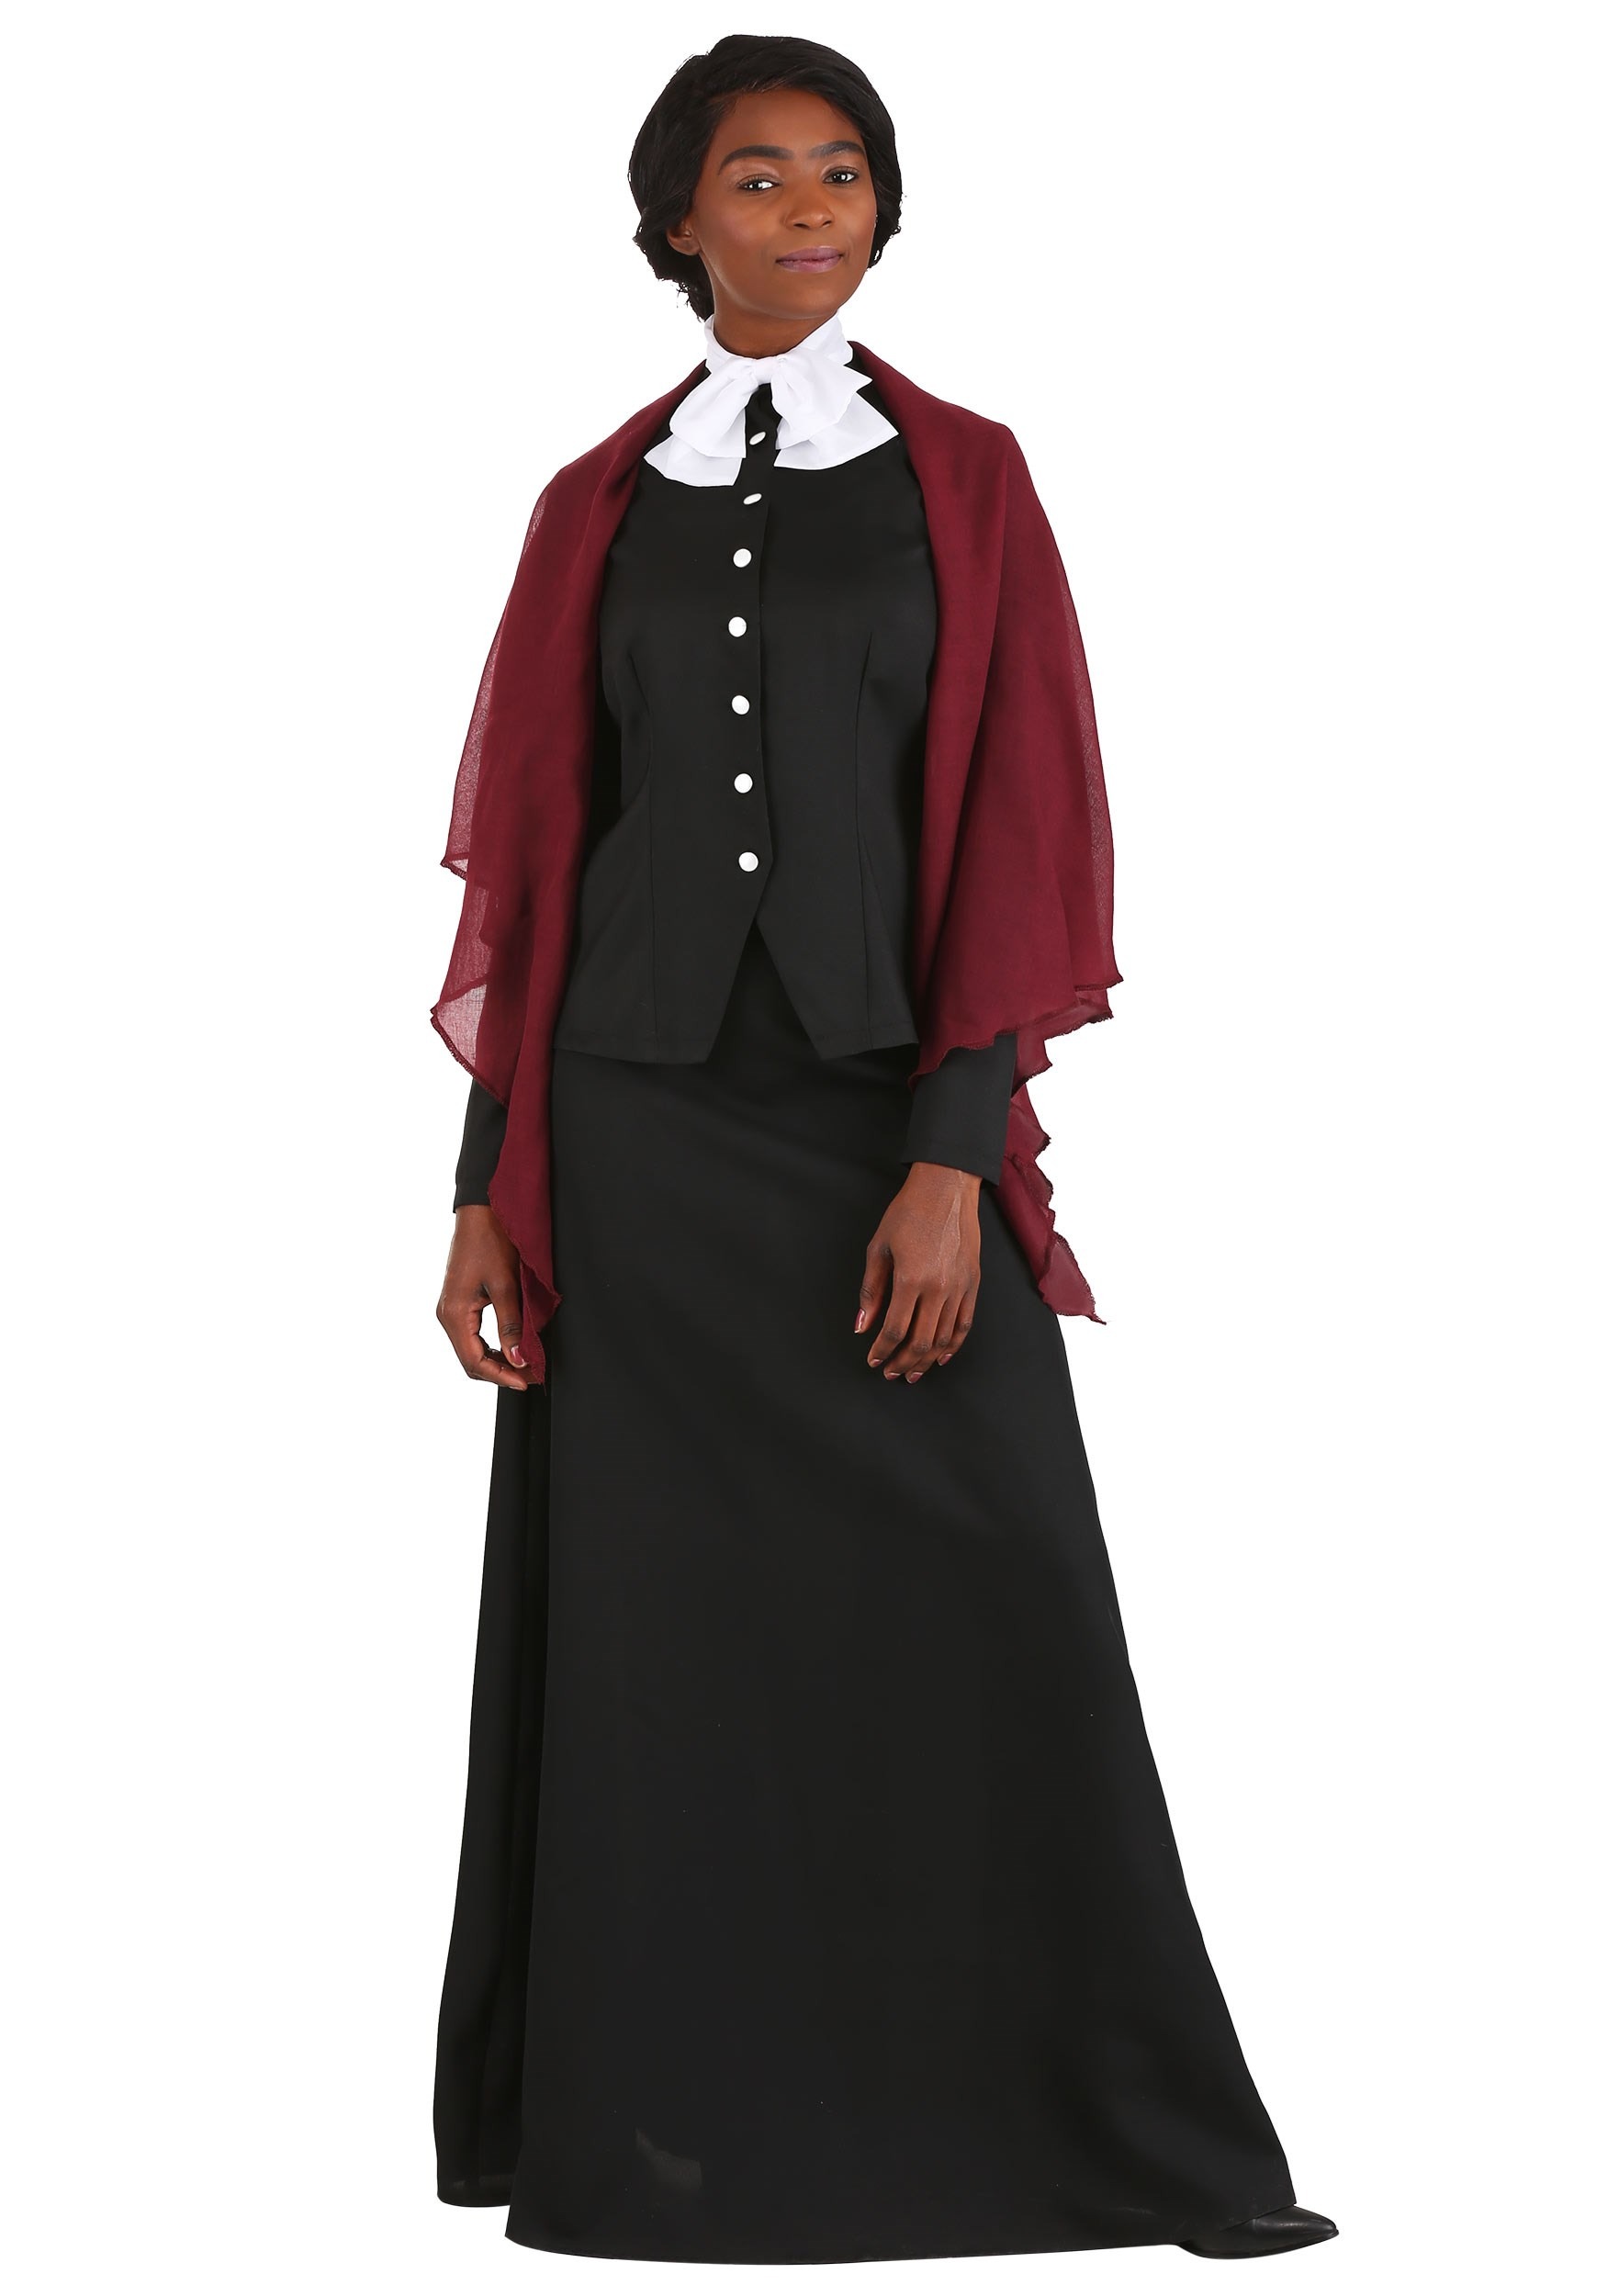 Harriet Tubman Women's Costume